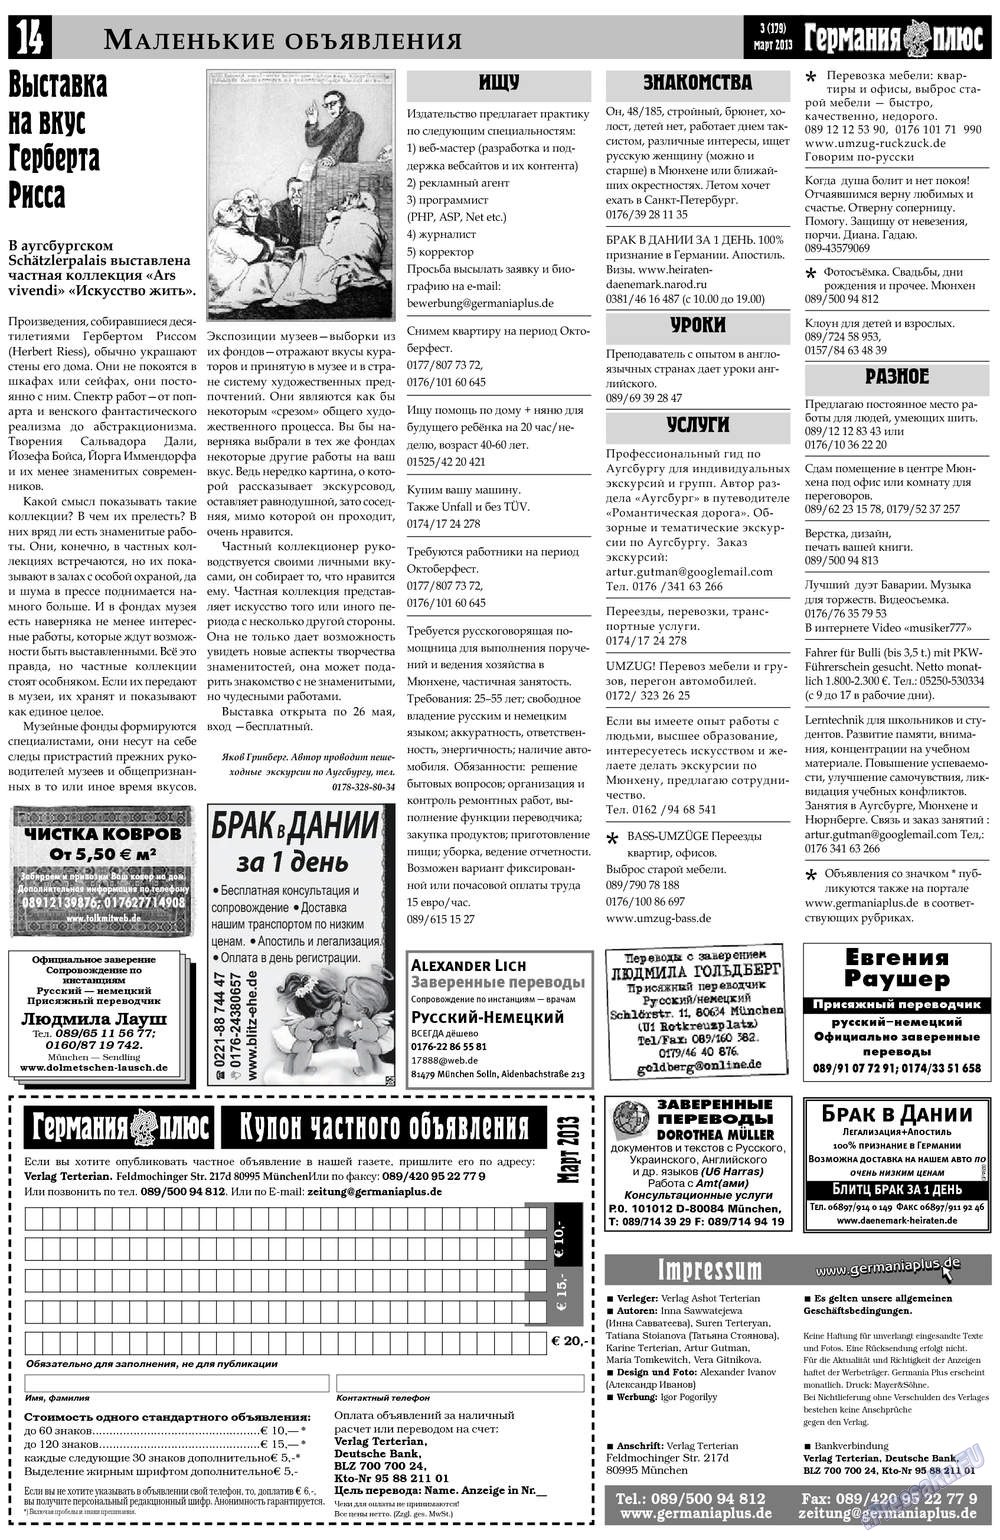 Германия плюс, газета. 2013 №3 стр.14